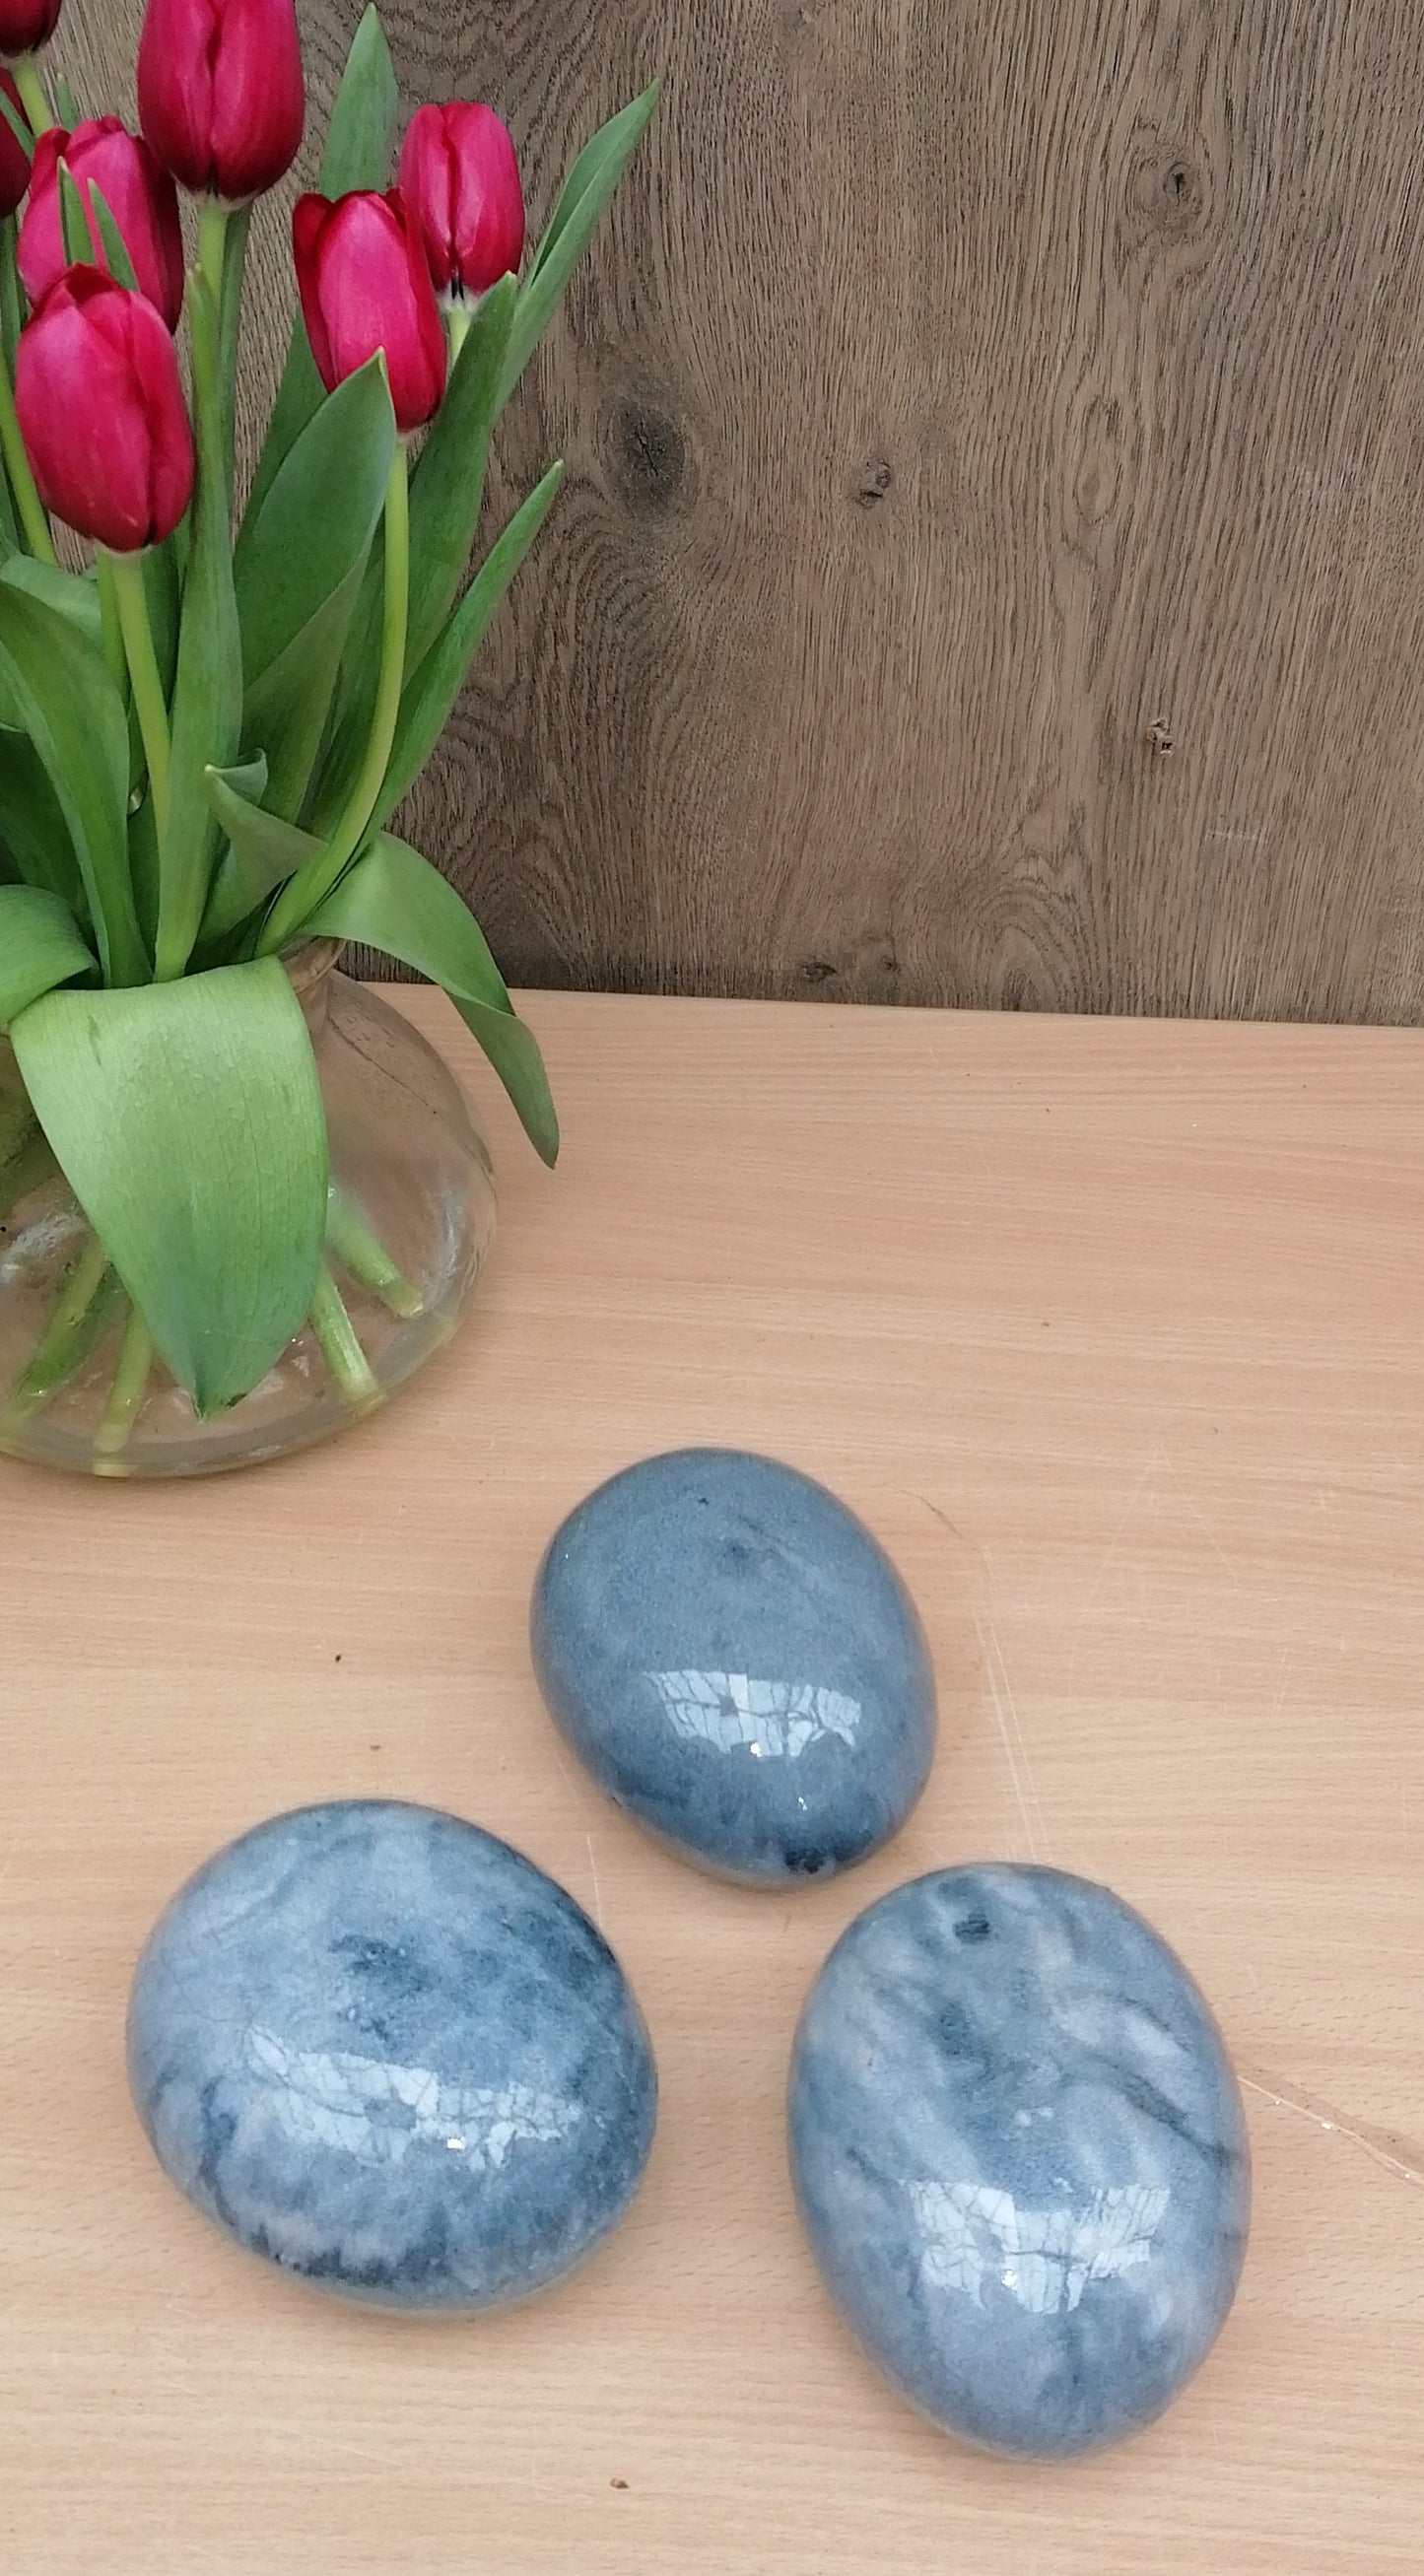 NEU !! 3er Set kleine ovale Eier - Steine aus frostfesten doppeltglasierten graublau marmorierten  Steinzeug  Dekoration